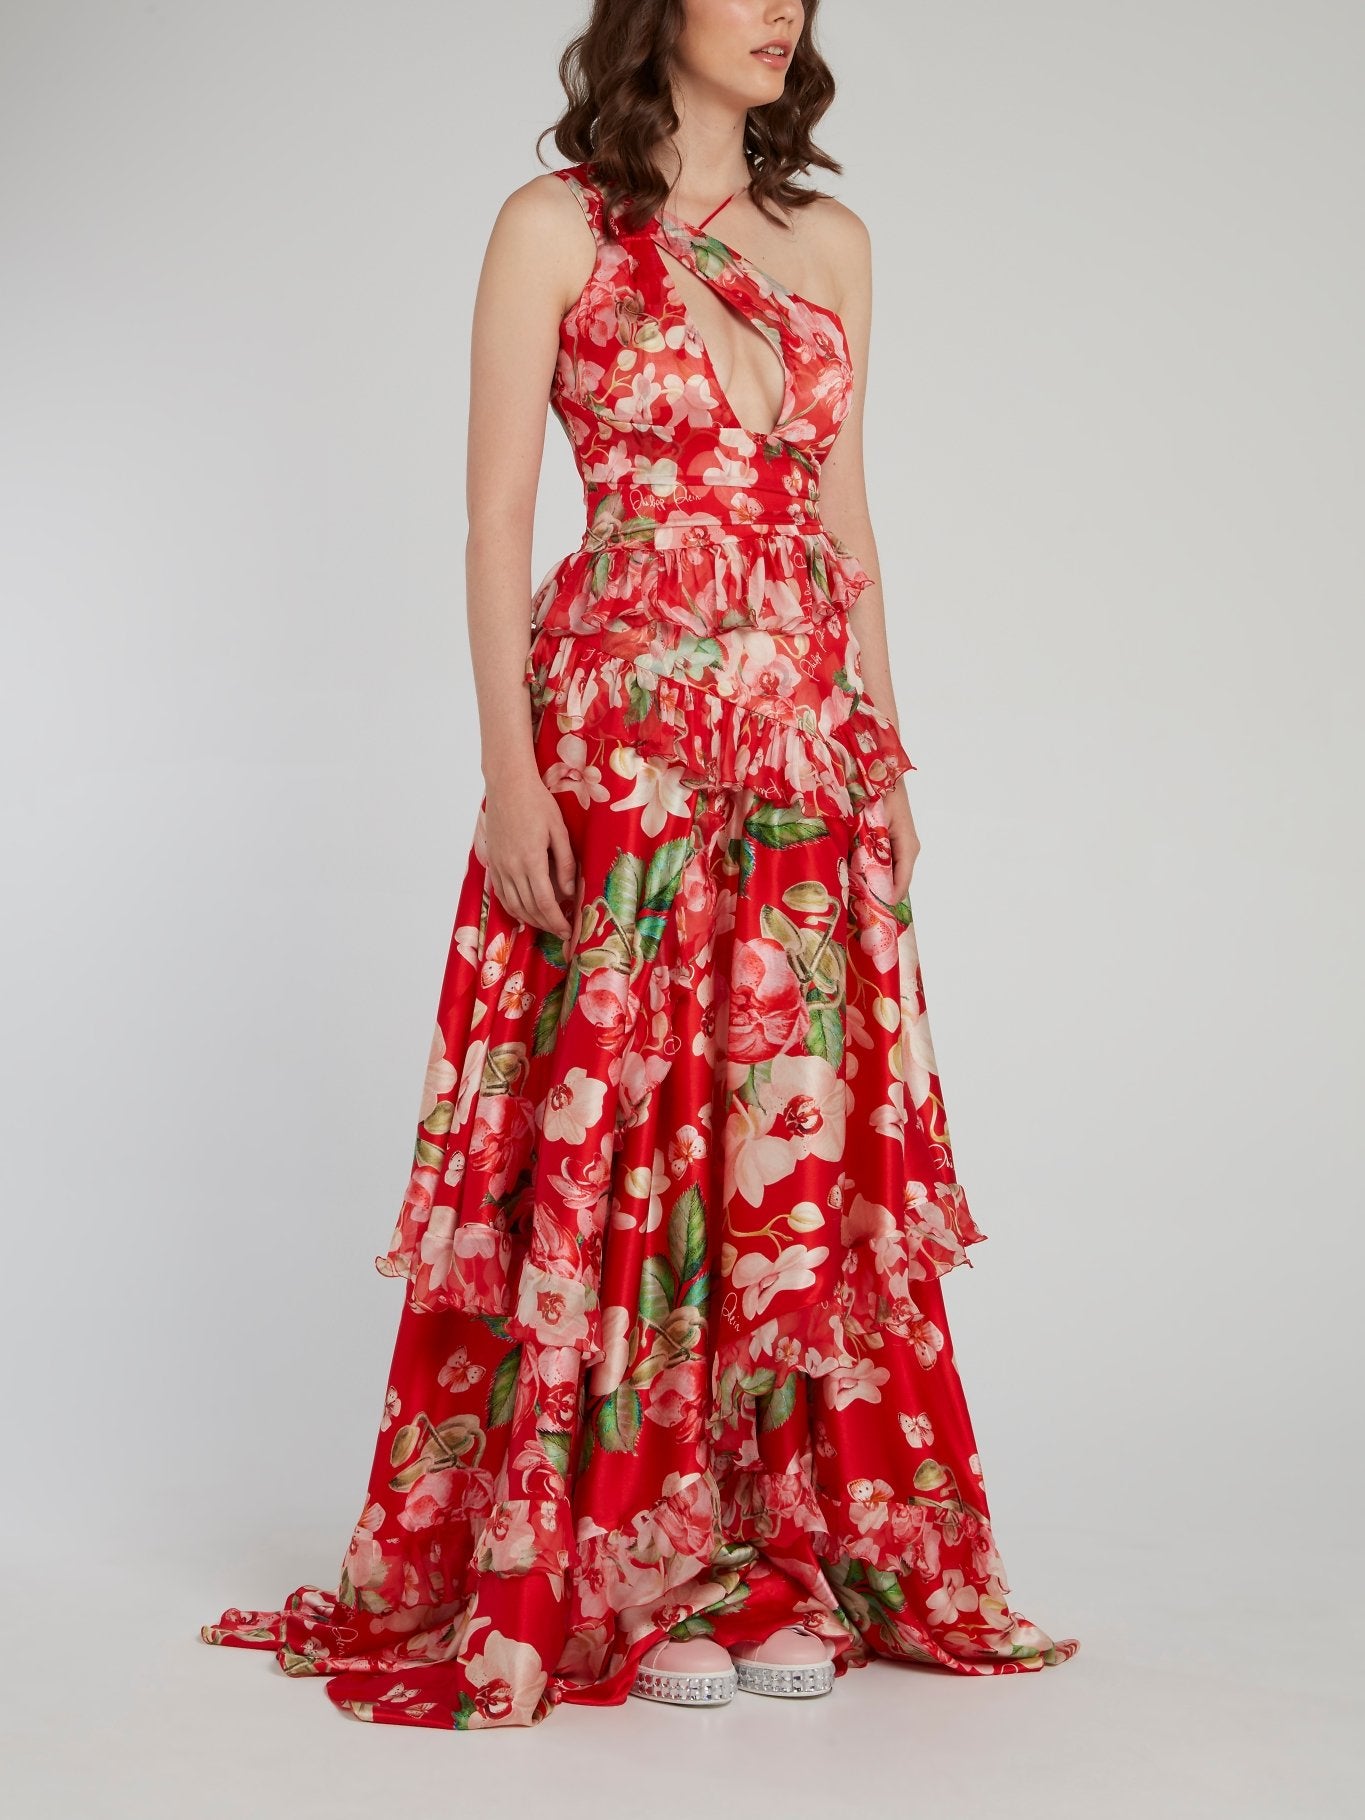 Красное многоярусное платье-макси с оборками и цветочным принтом